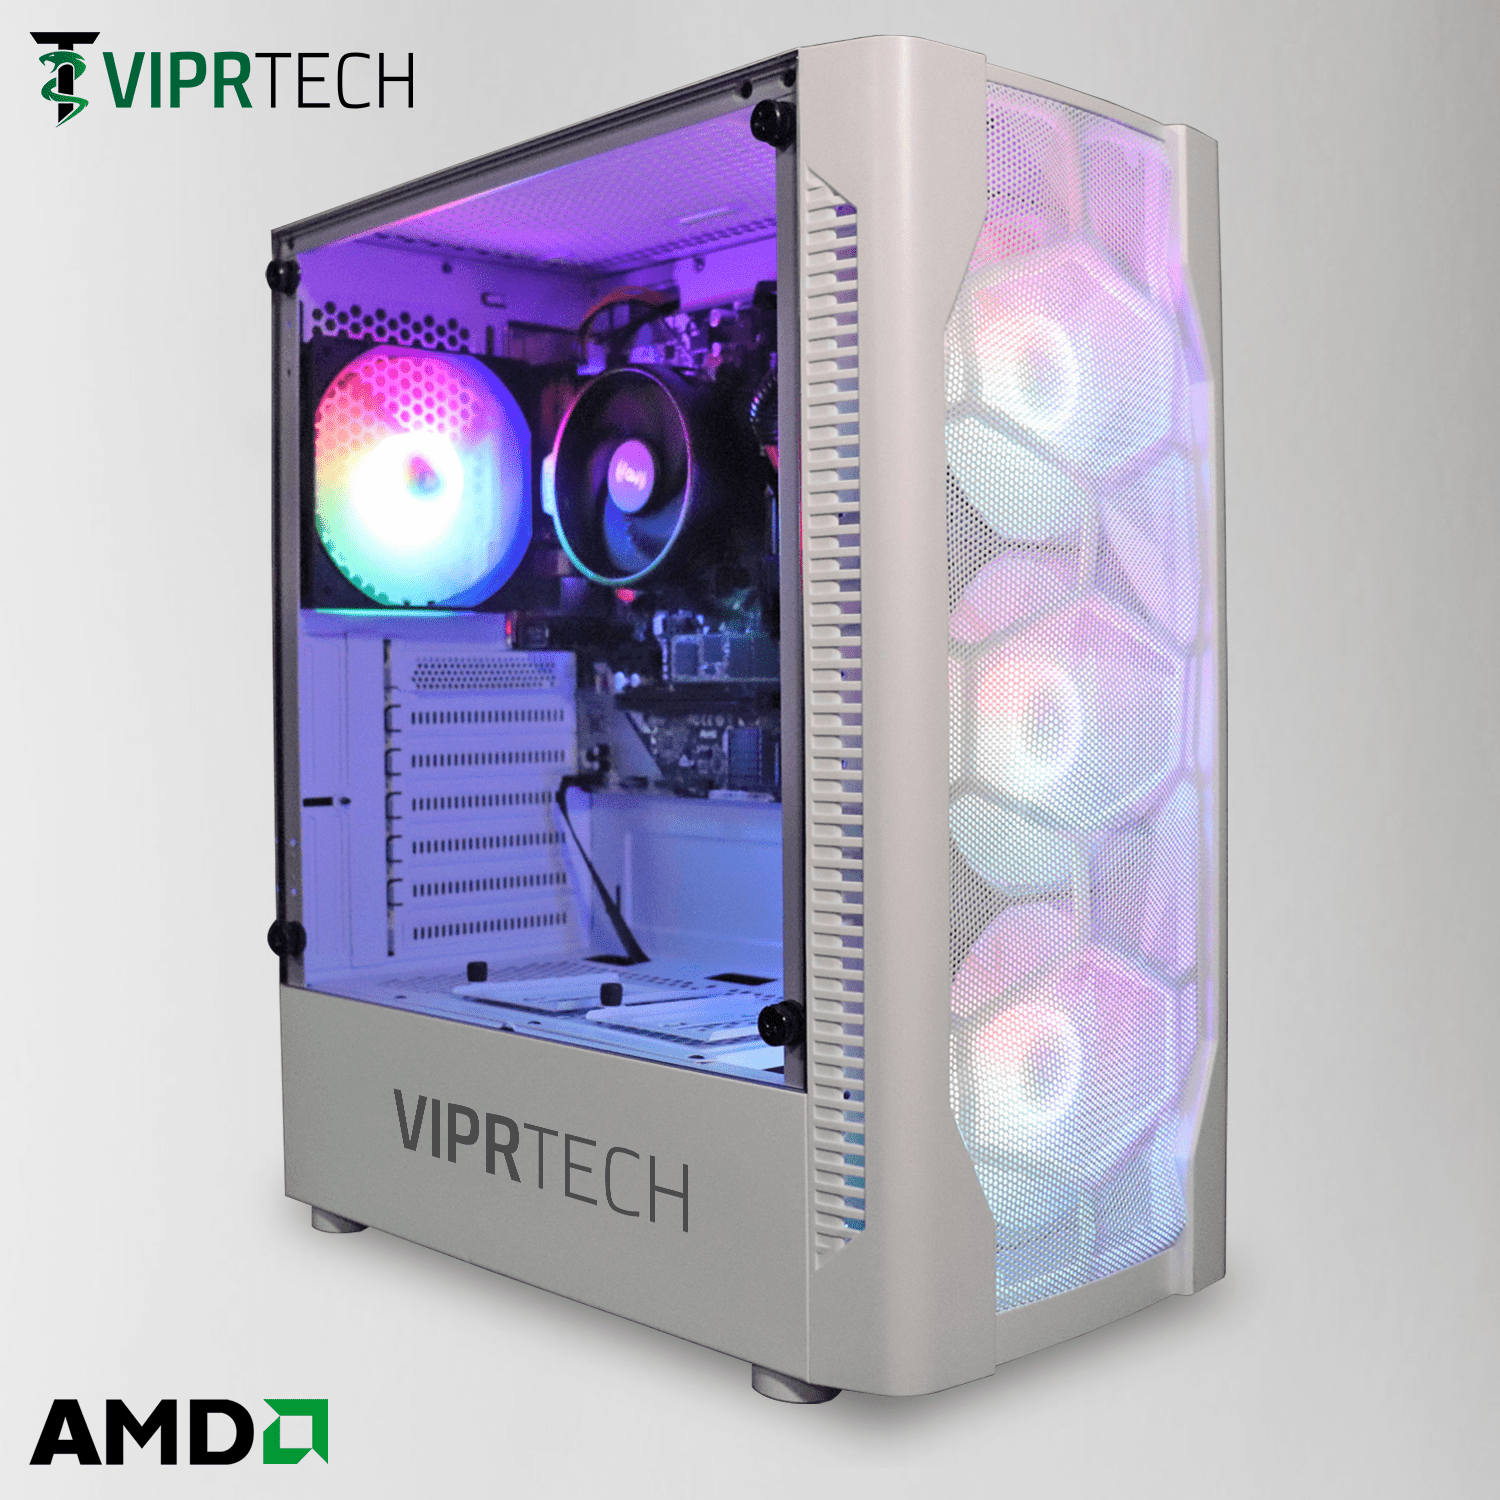 ViprTech.com Snowstorm Gaming PC Desktop Computer - AMD Ryzen 3 2200G ...